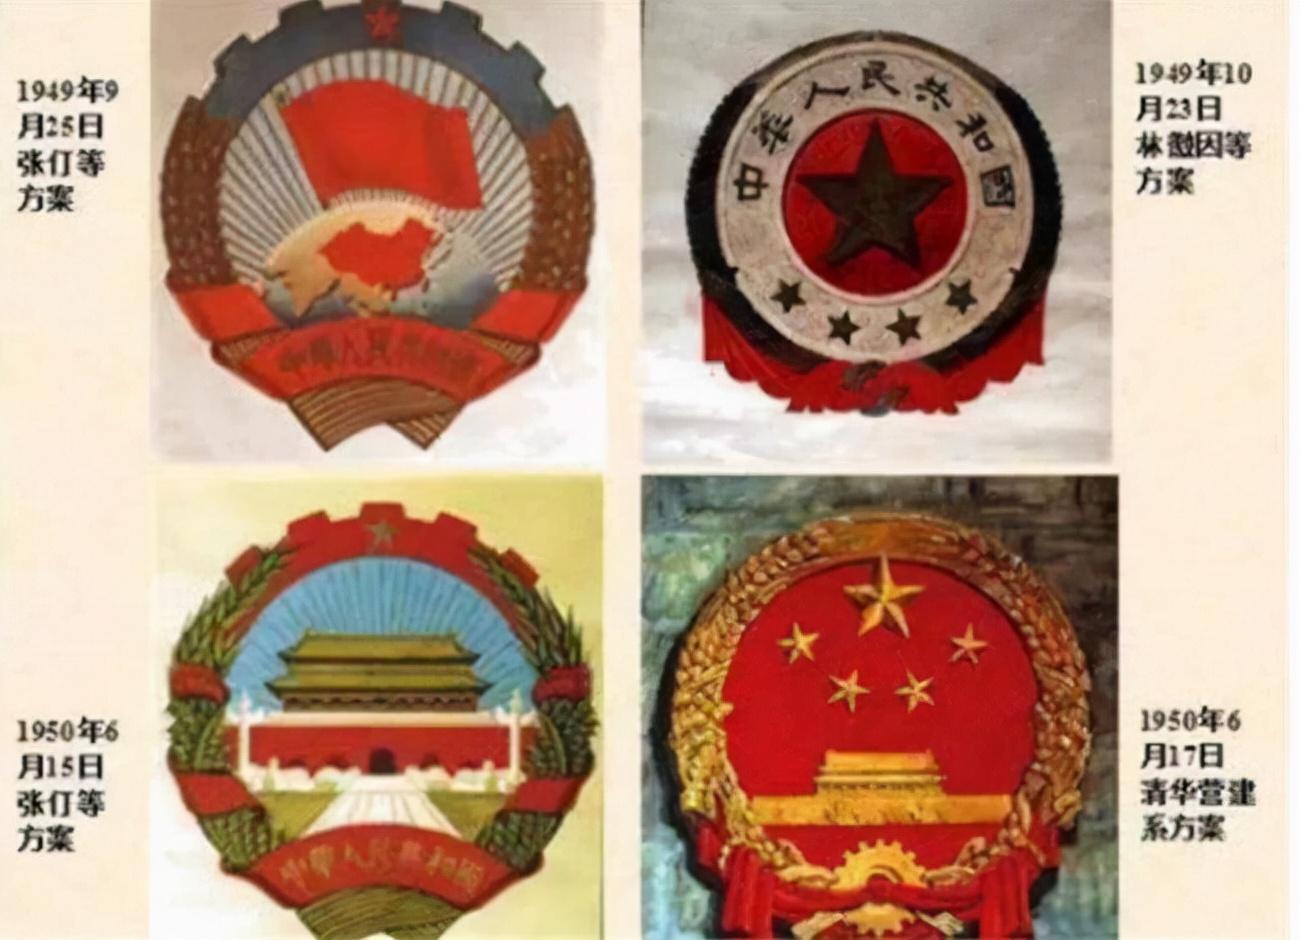 1949年林徽因设计国徽时,周总理提出一建议,林徽因听后眼前一亮